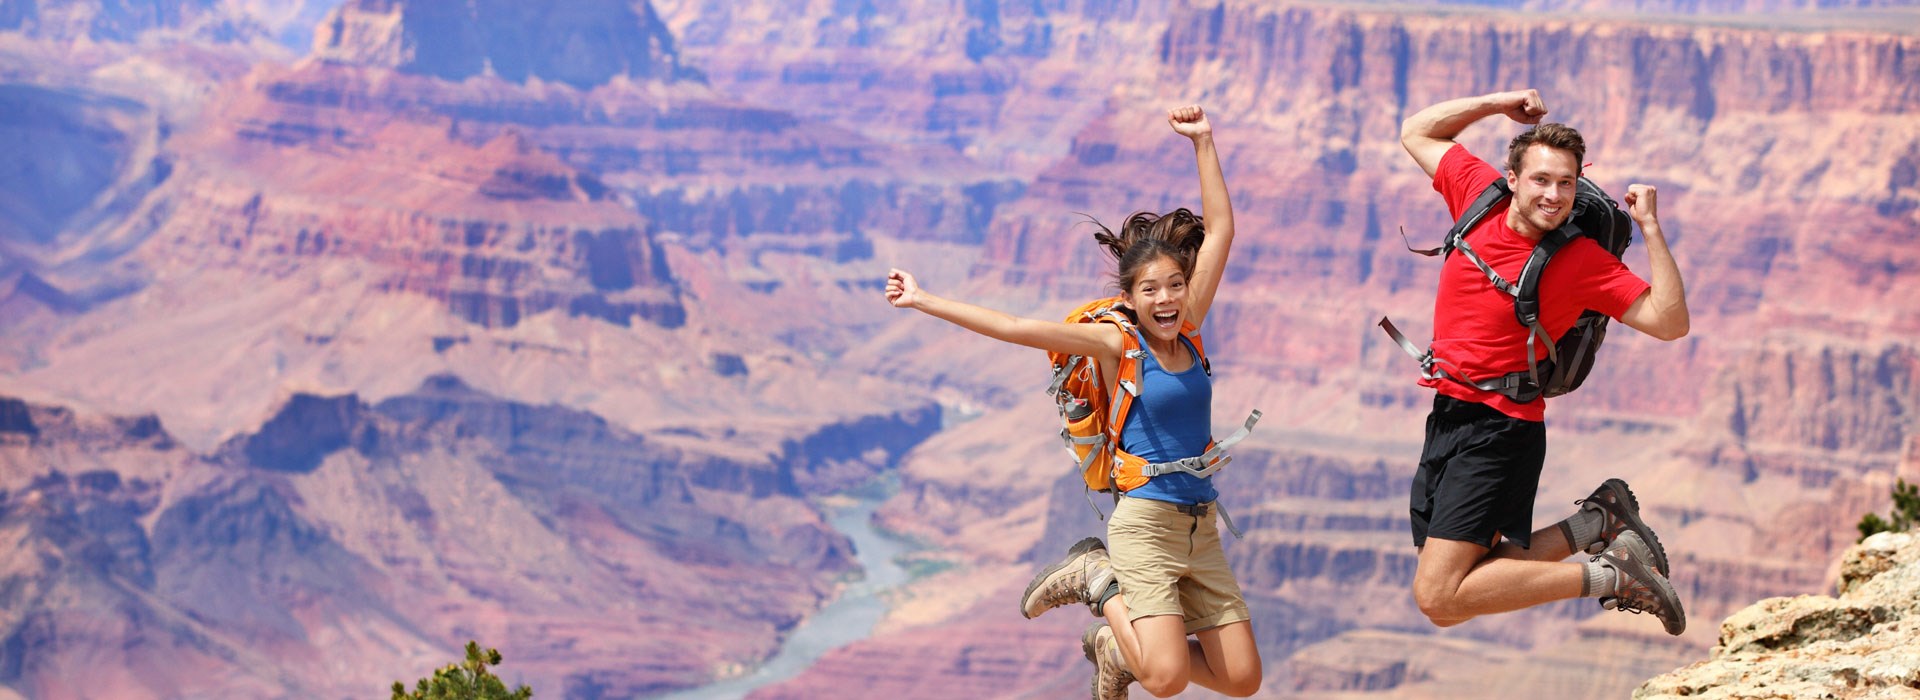 Visiter Le parc national du Grand Canyon - Etats-Unis